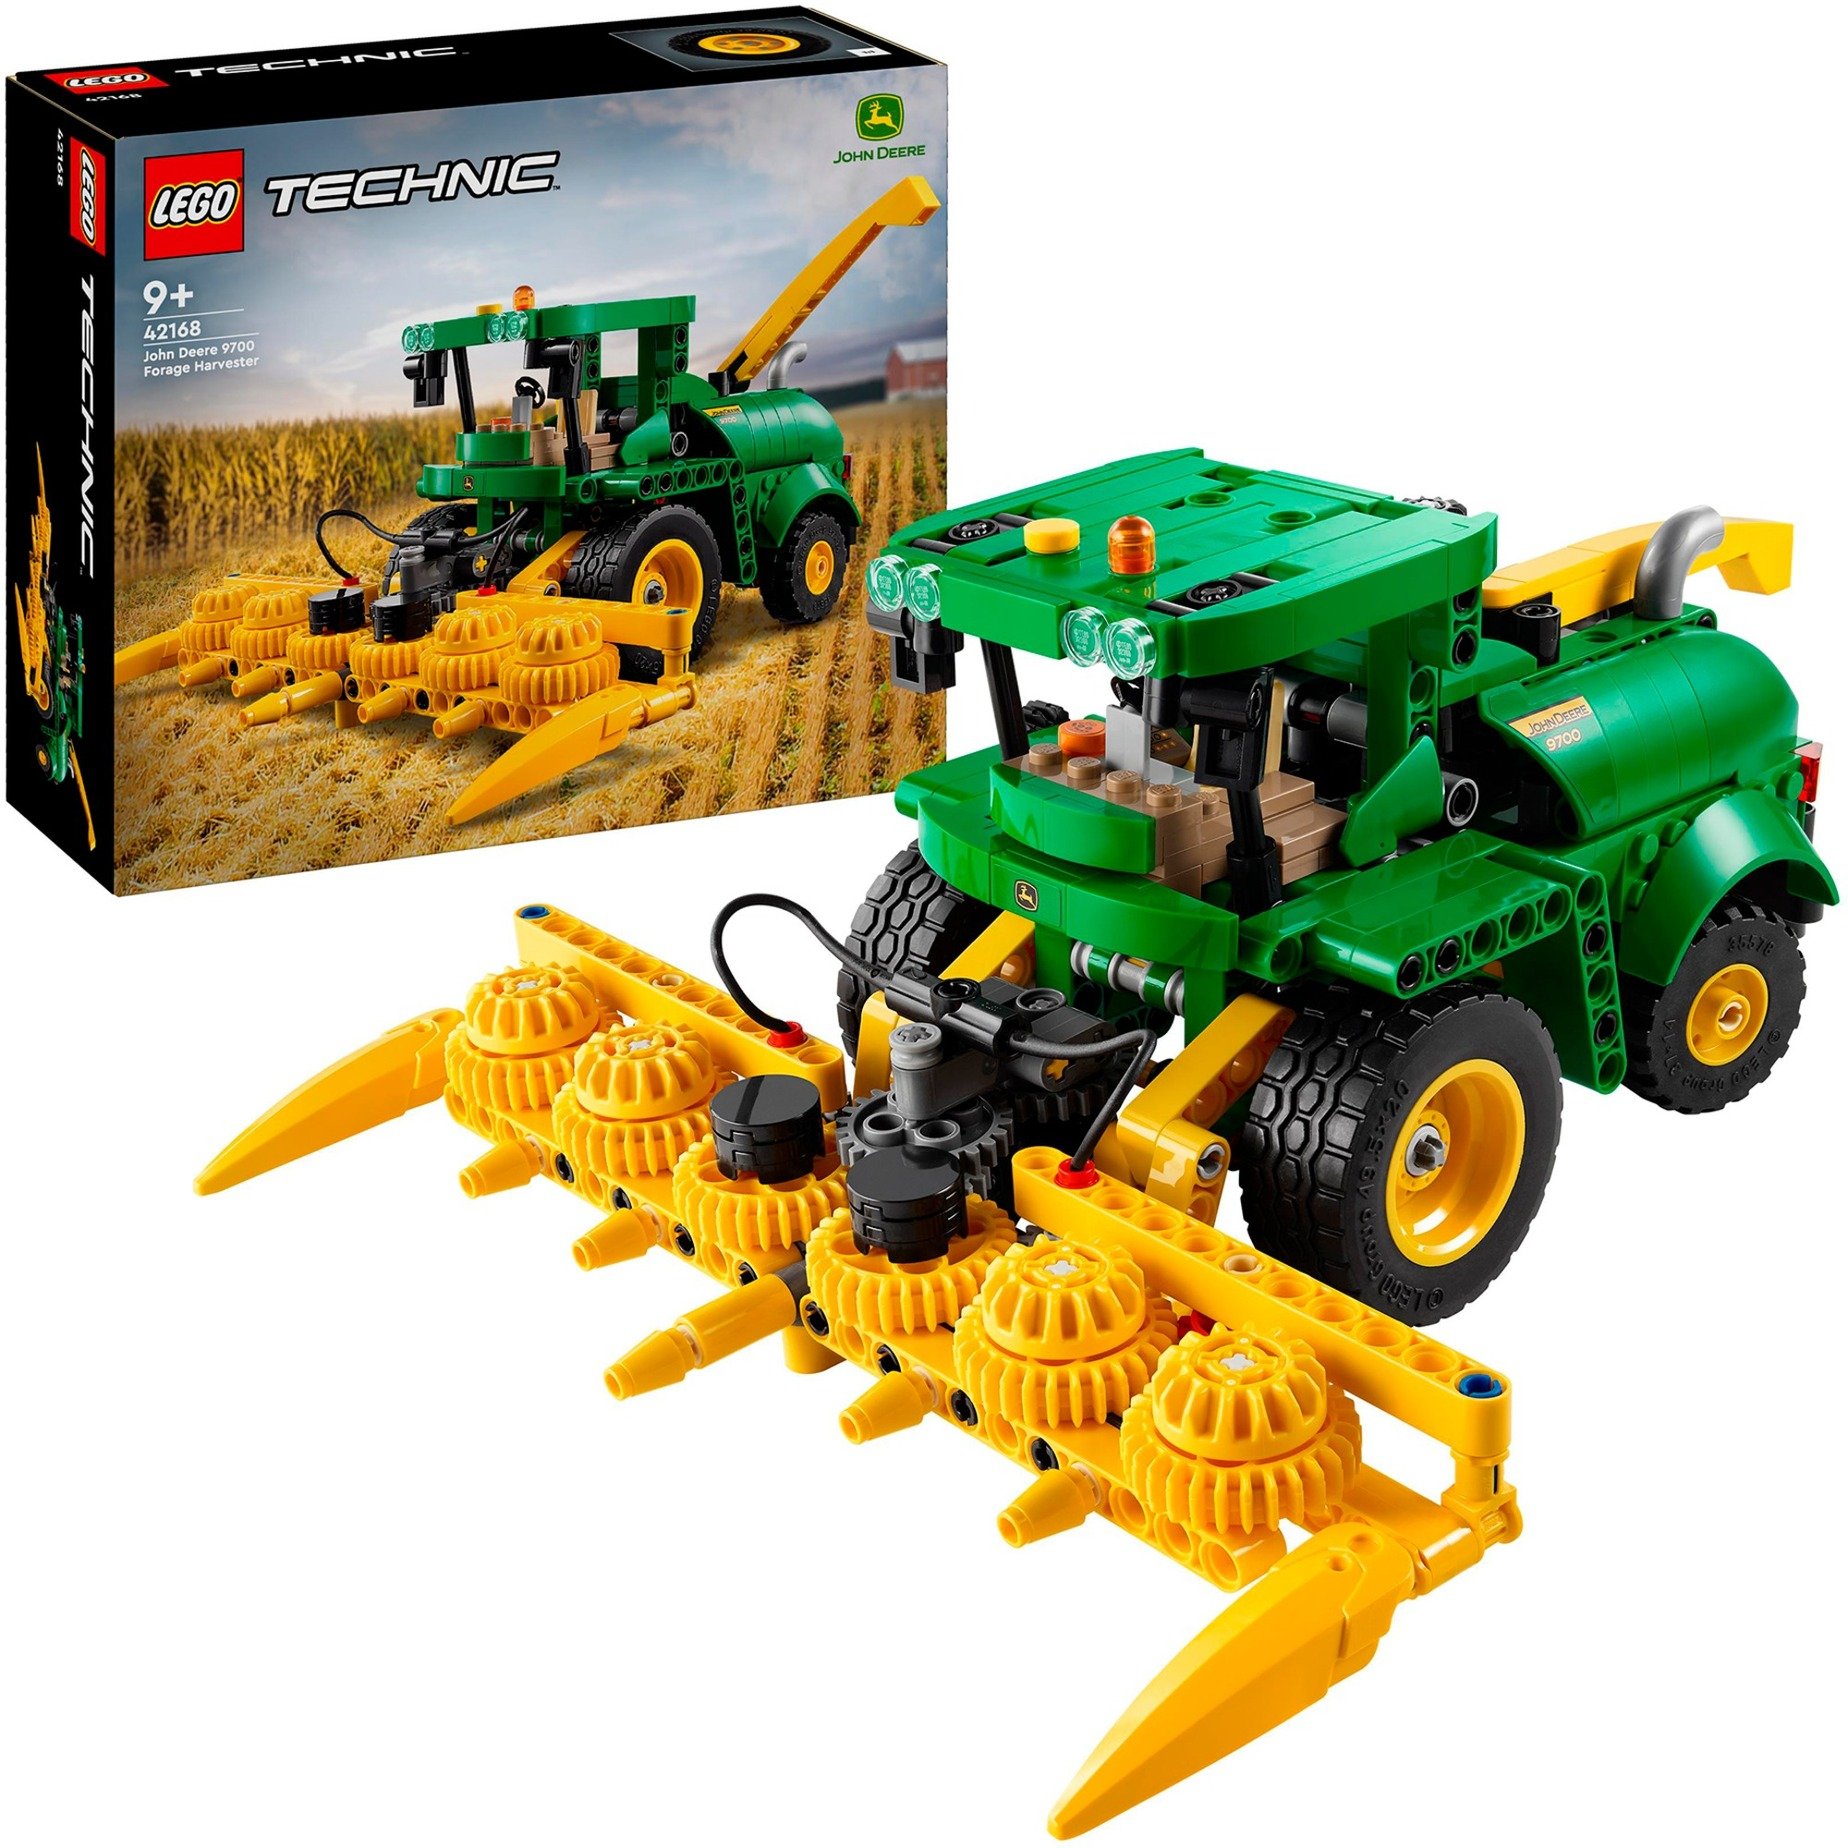 42168 Technic John Deere 9700 Forage Harvester, Konstruktionsspielzeug von Lego